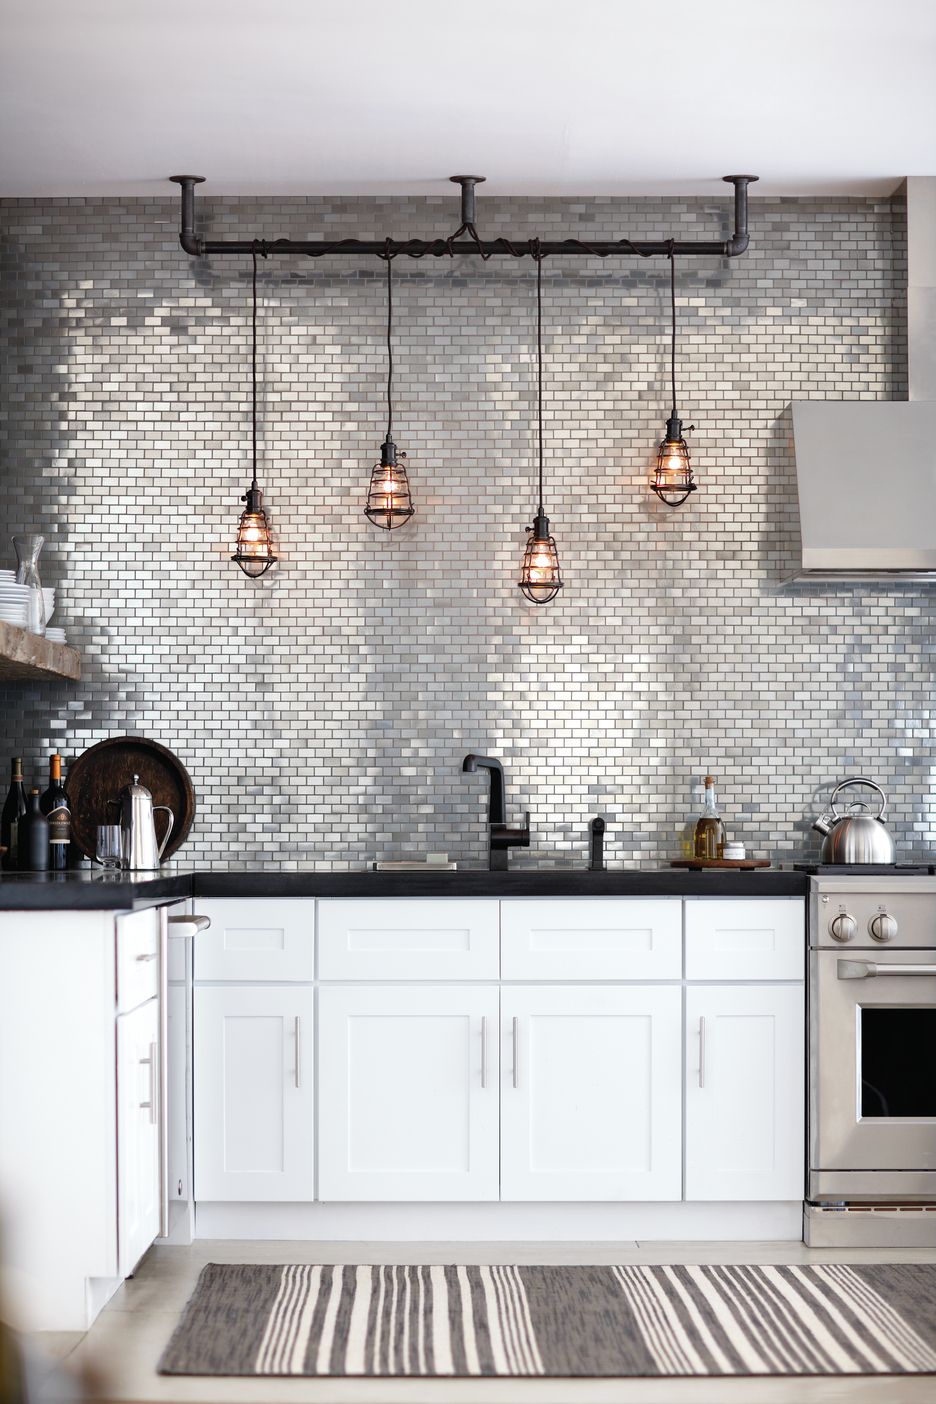 Upgrade Your Kitchen With These Amazing Backsplash Ideas